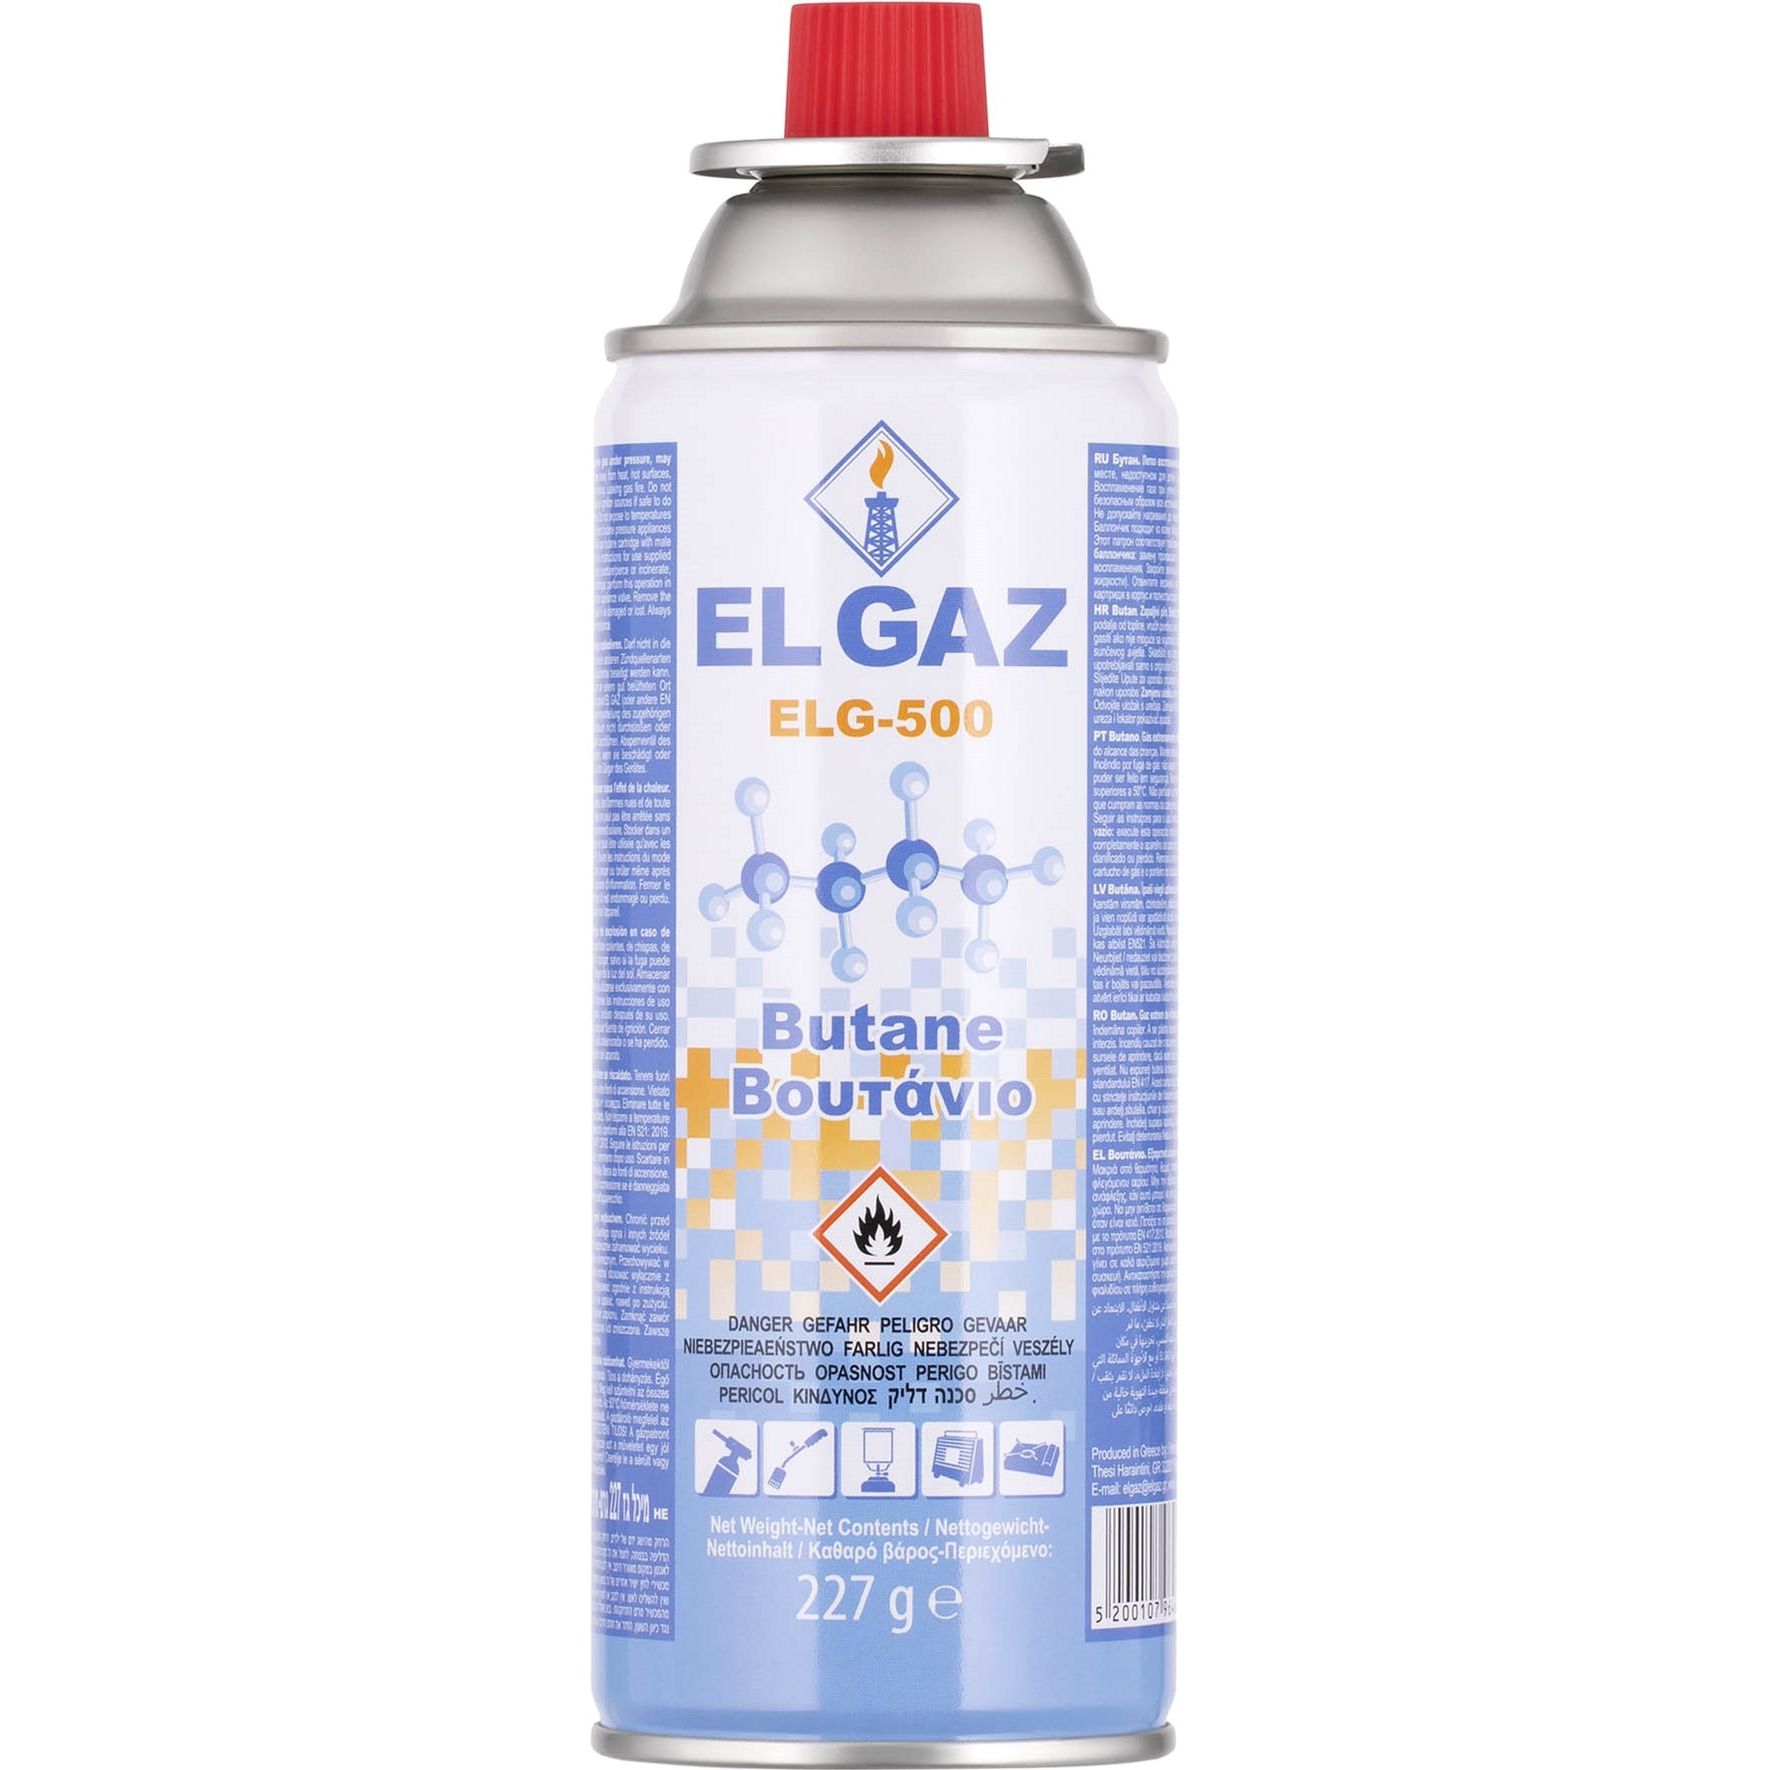 Баллон-картридж газовый El Gaz ELG-500 цанговый бутан 227 г (104ELG-500) - фото 1